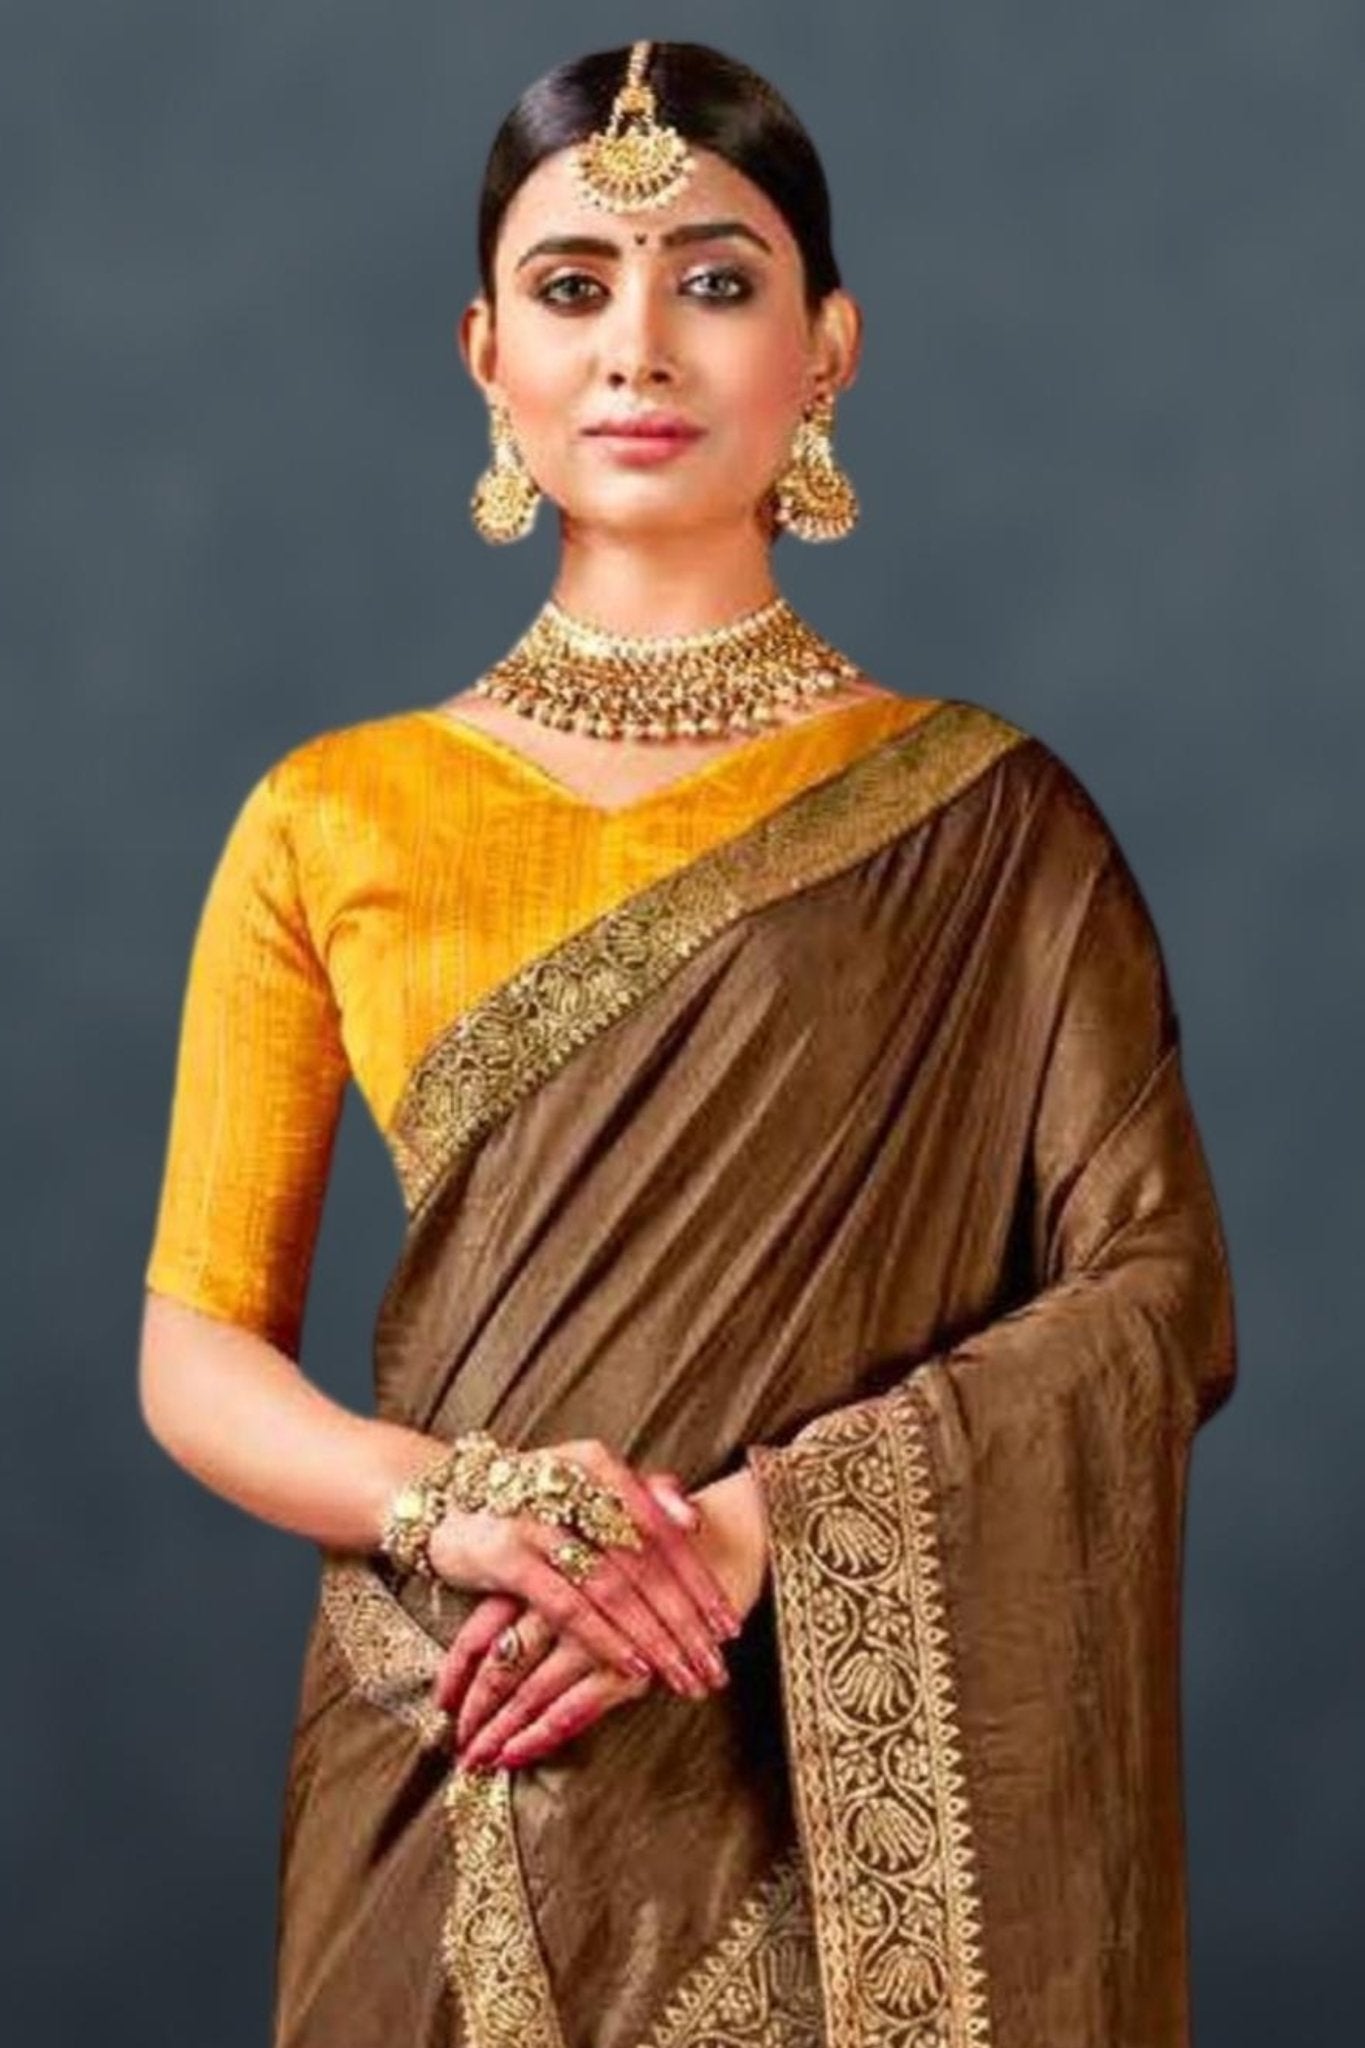 how to style jewellery with orange Saree || orange saree earrings ideas ||  jewellery for saree - YouTube